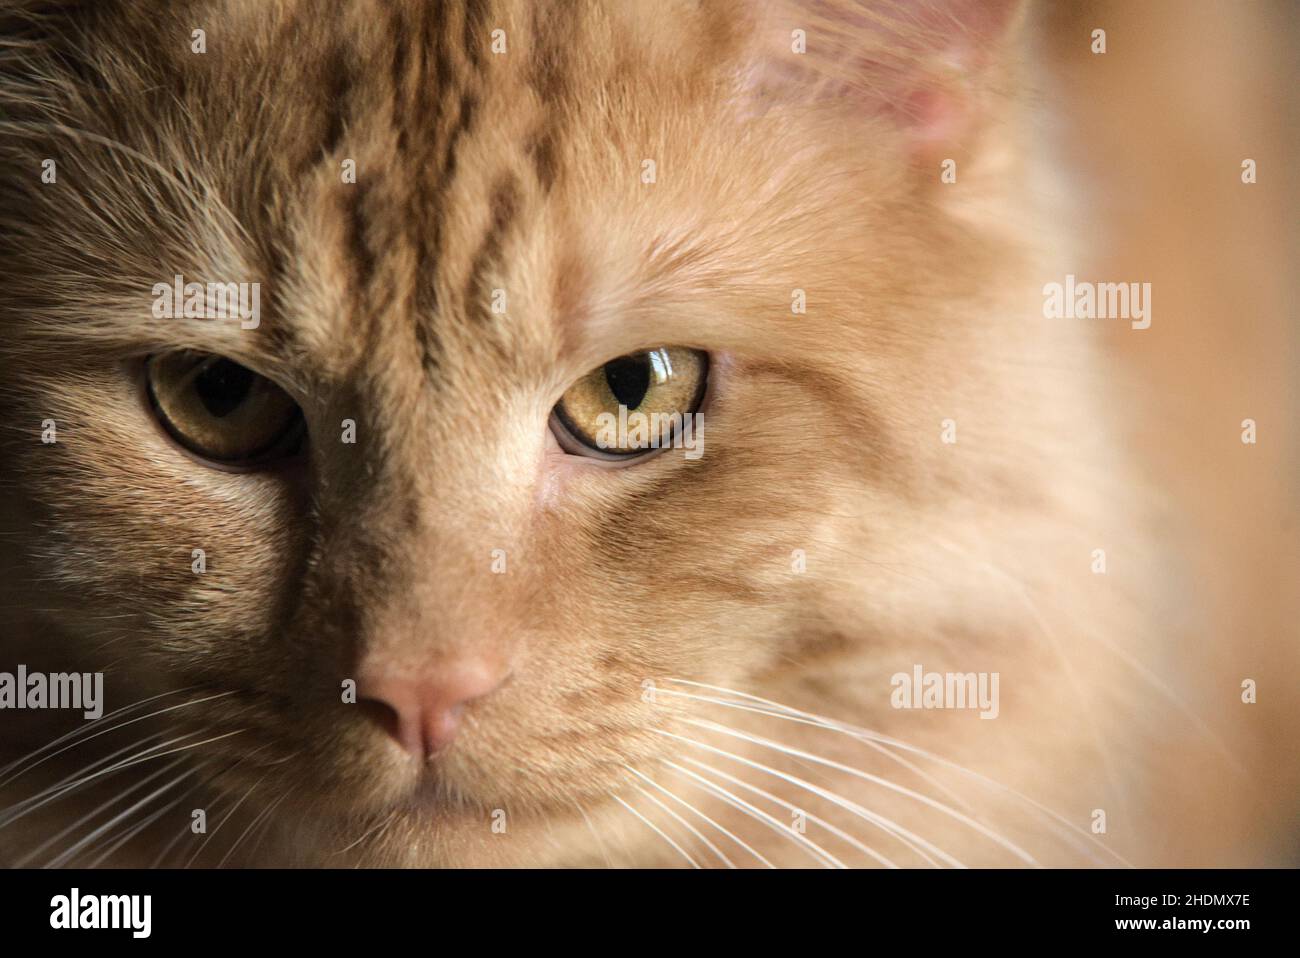 Gato de jengibre con ojos amarillos Foto de stock